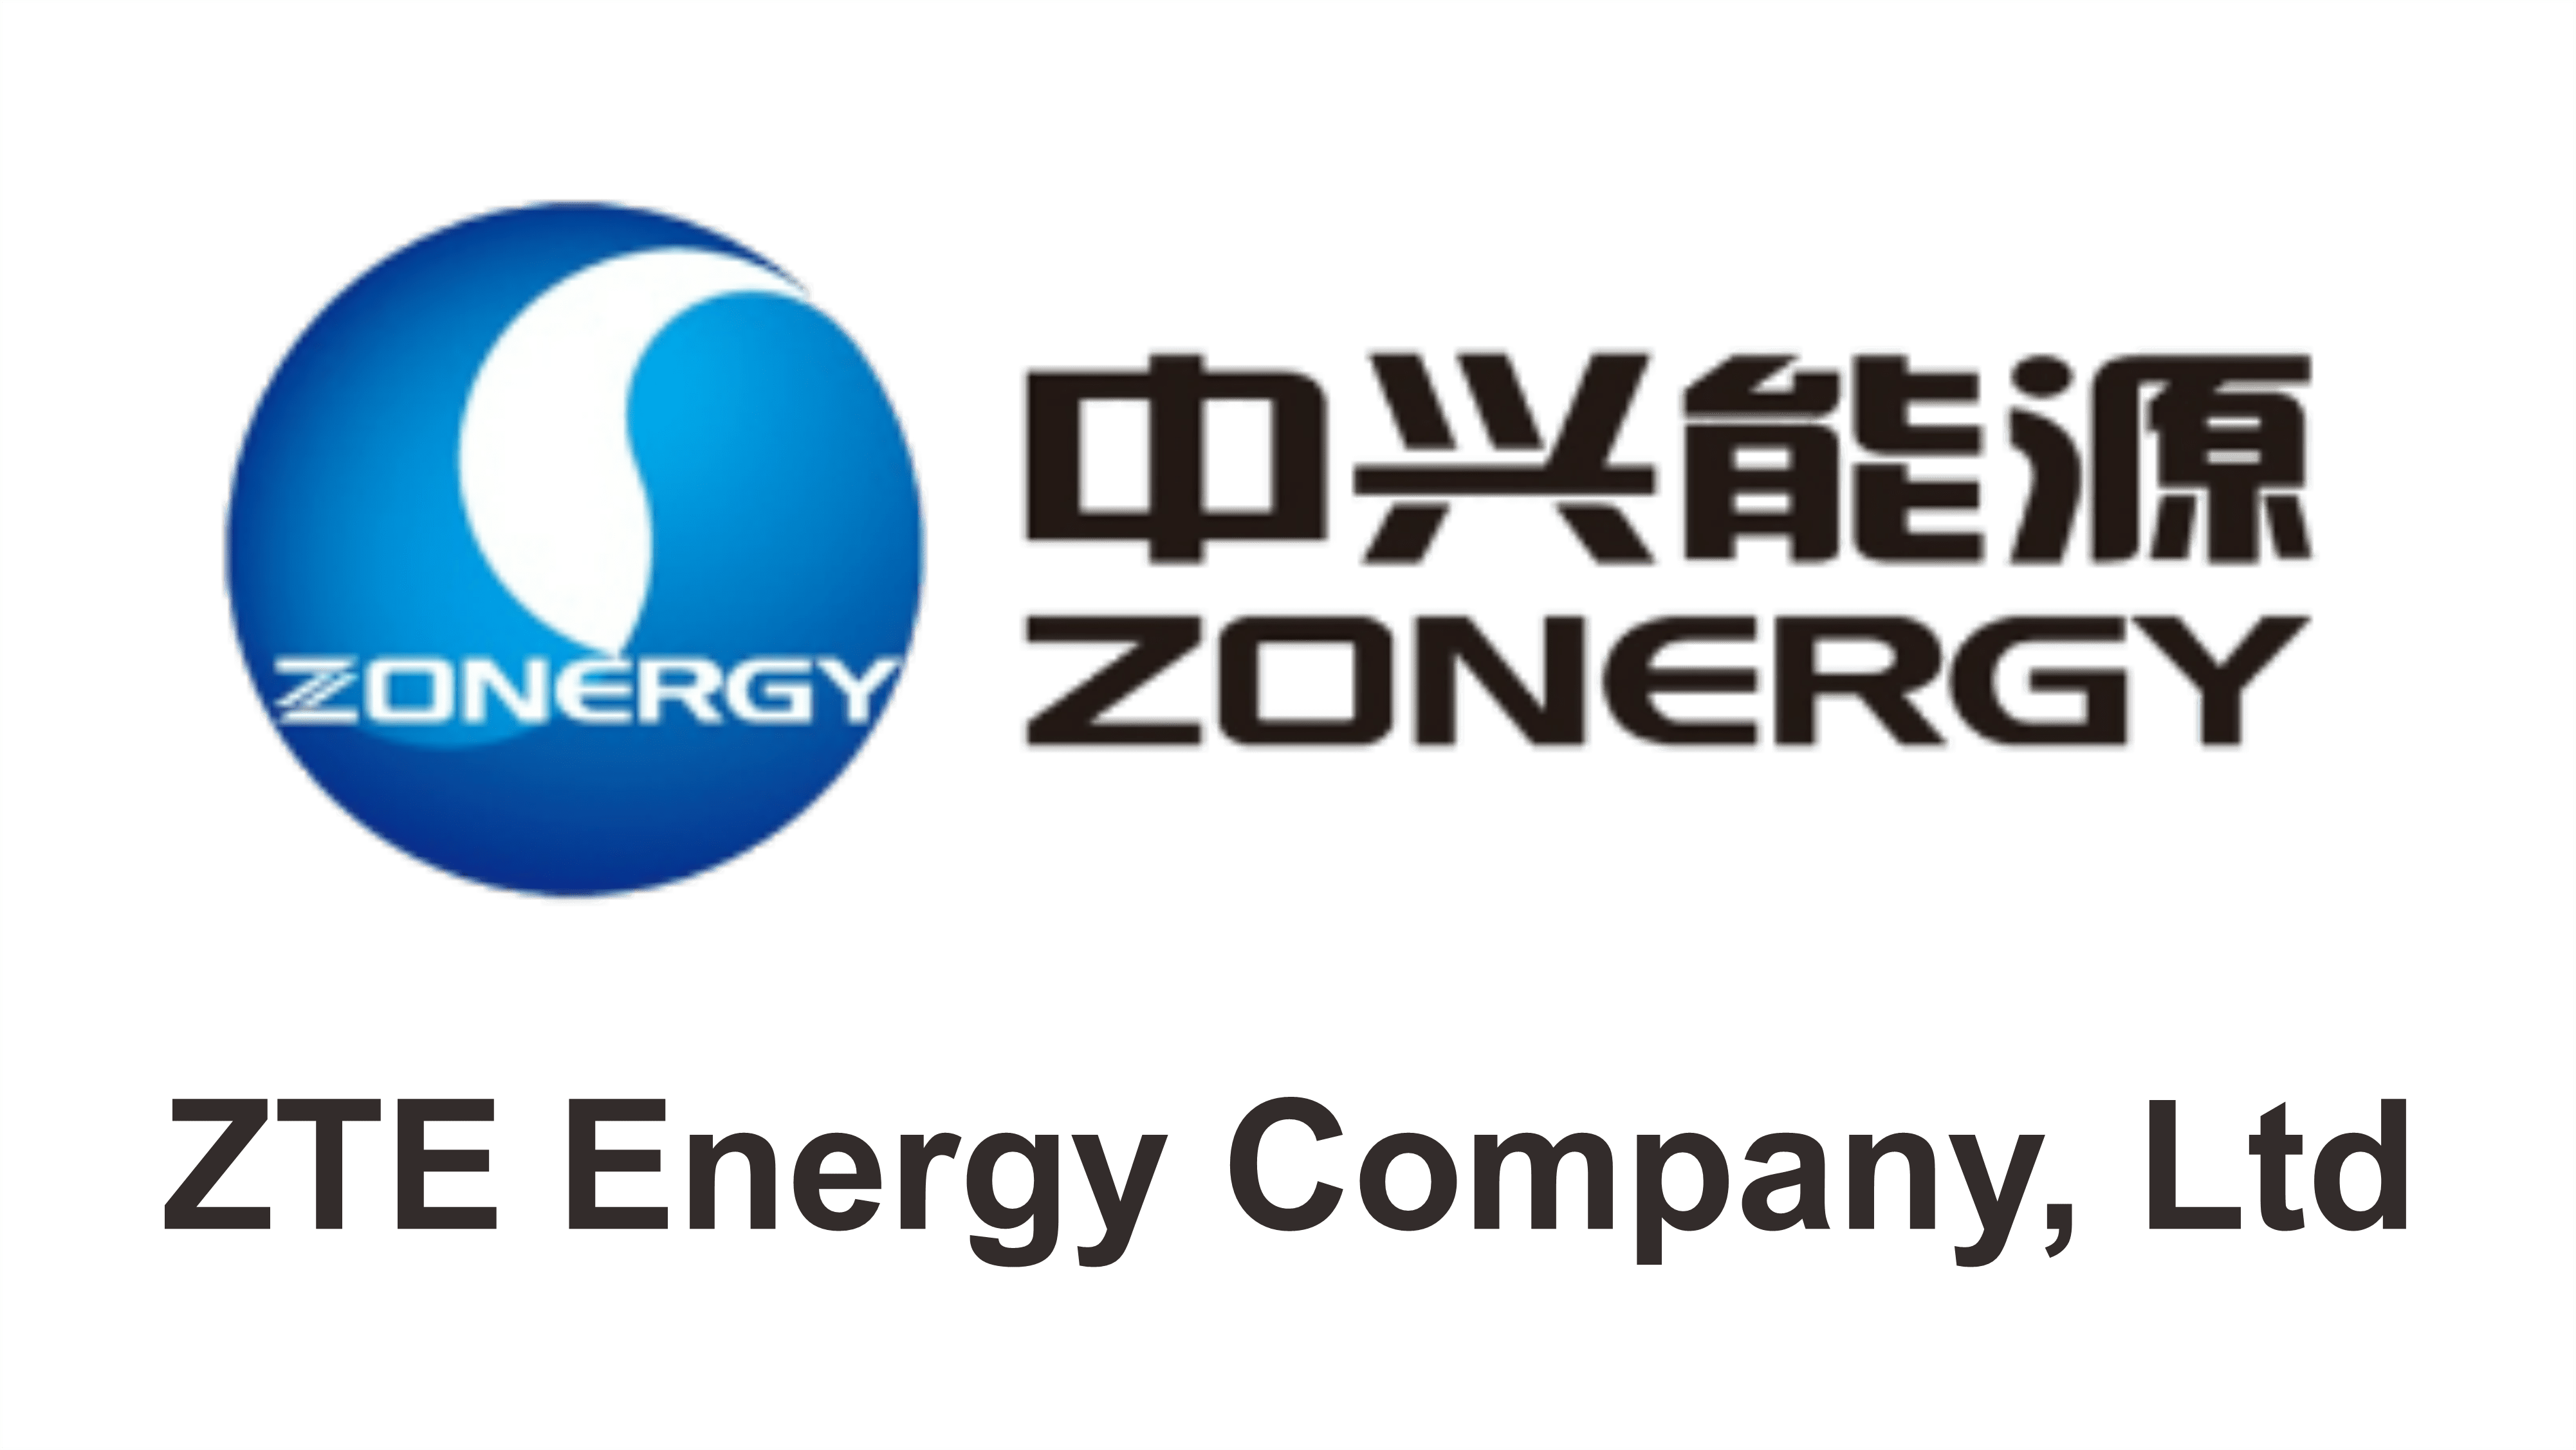 ZTE Energy Company, Ltd